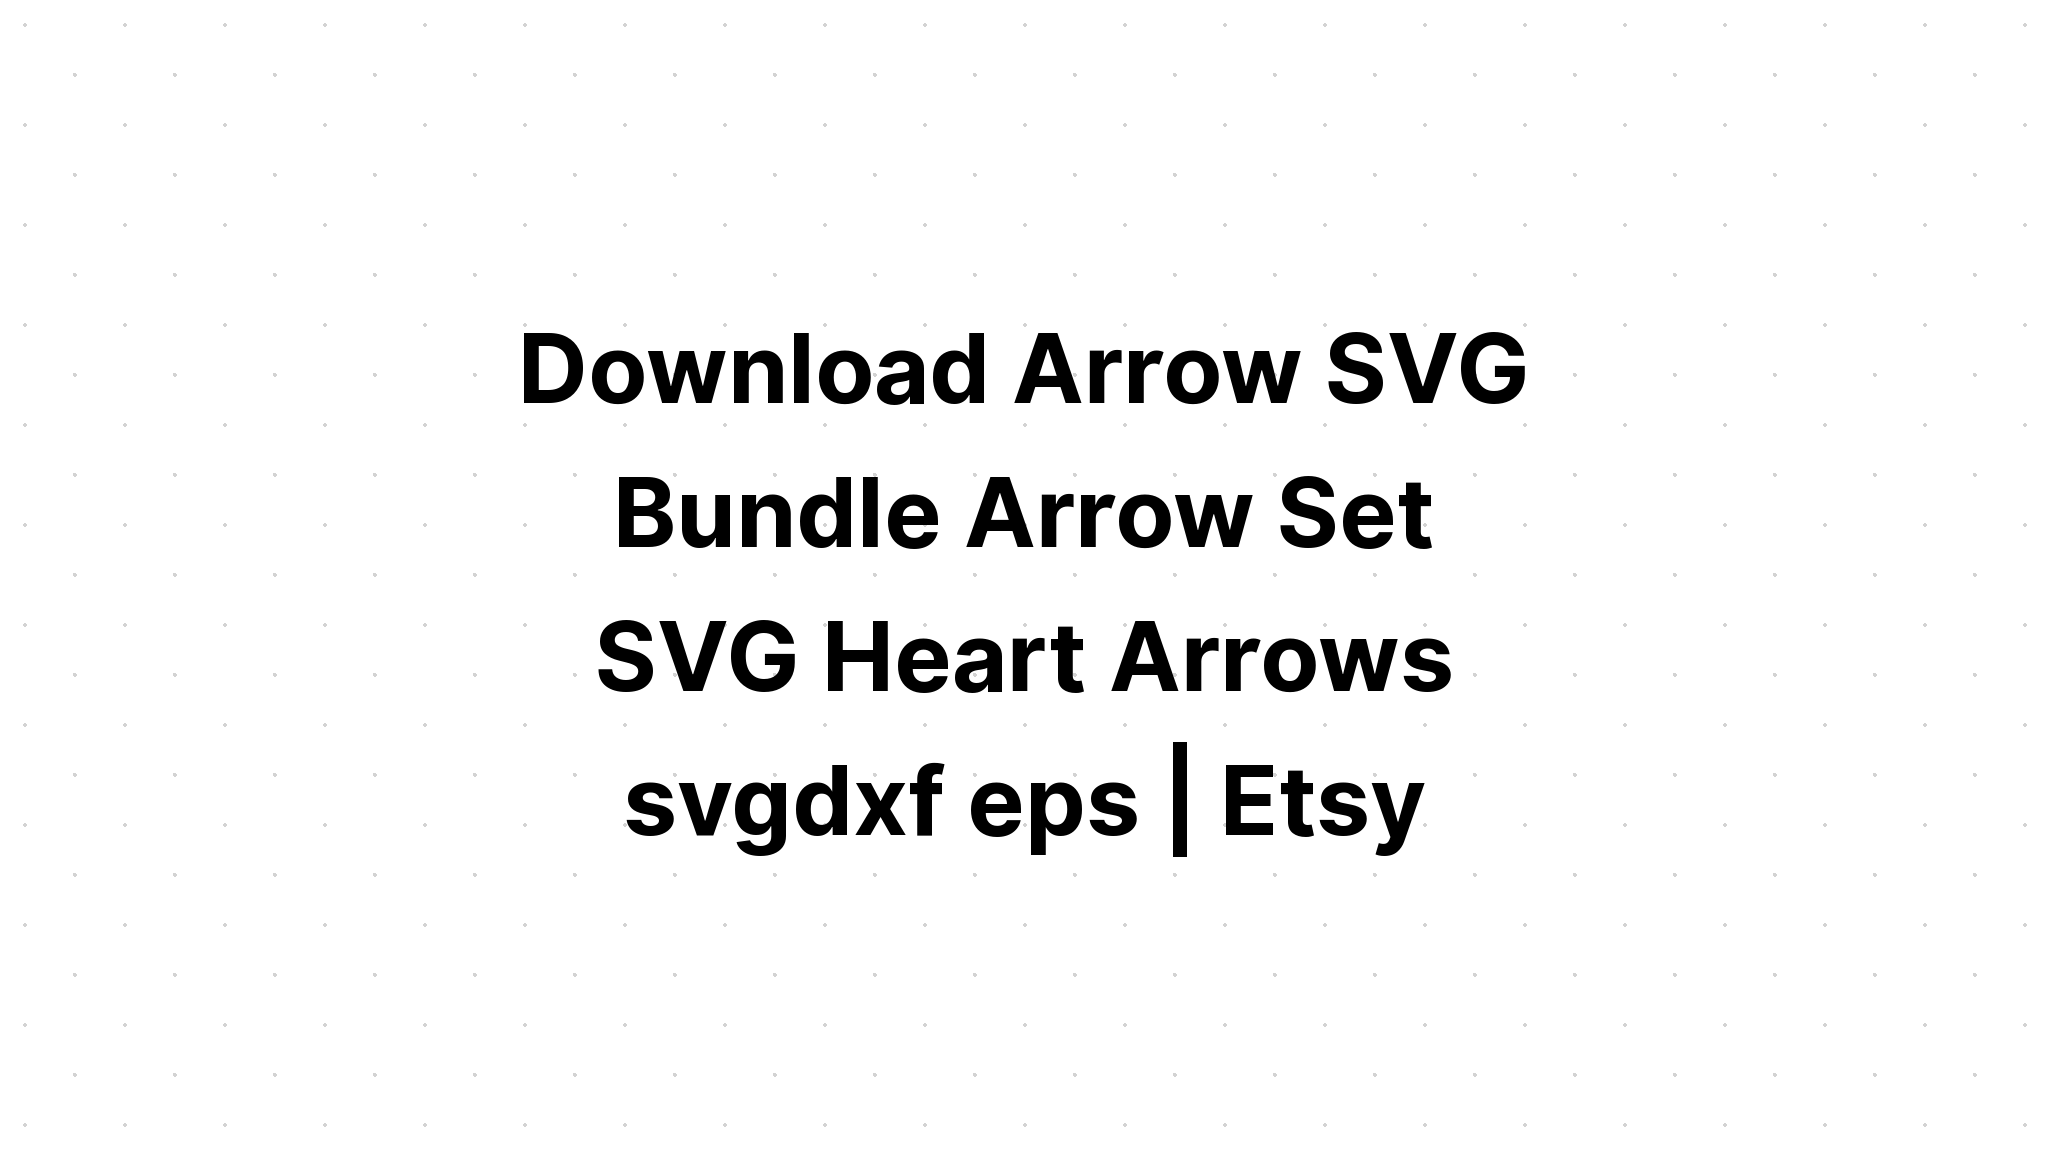 Download Arrow Bundle Svg SVG File